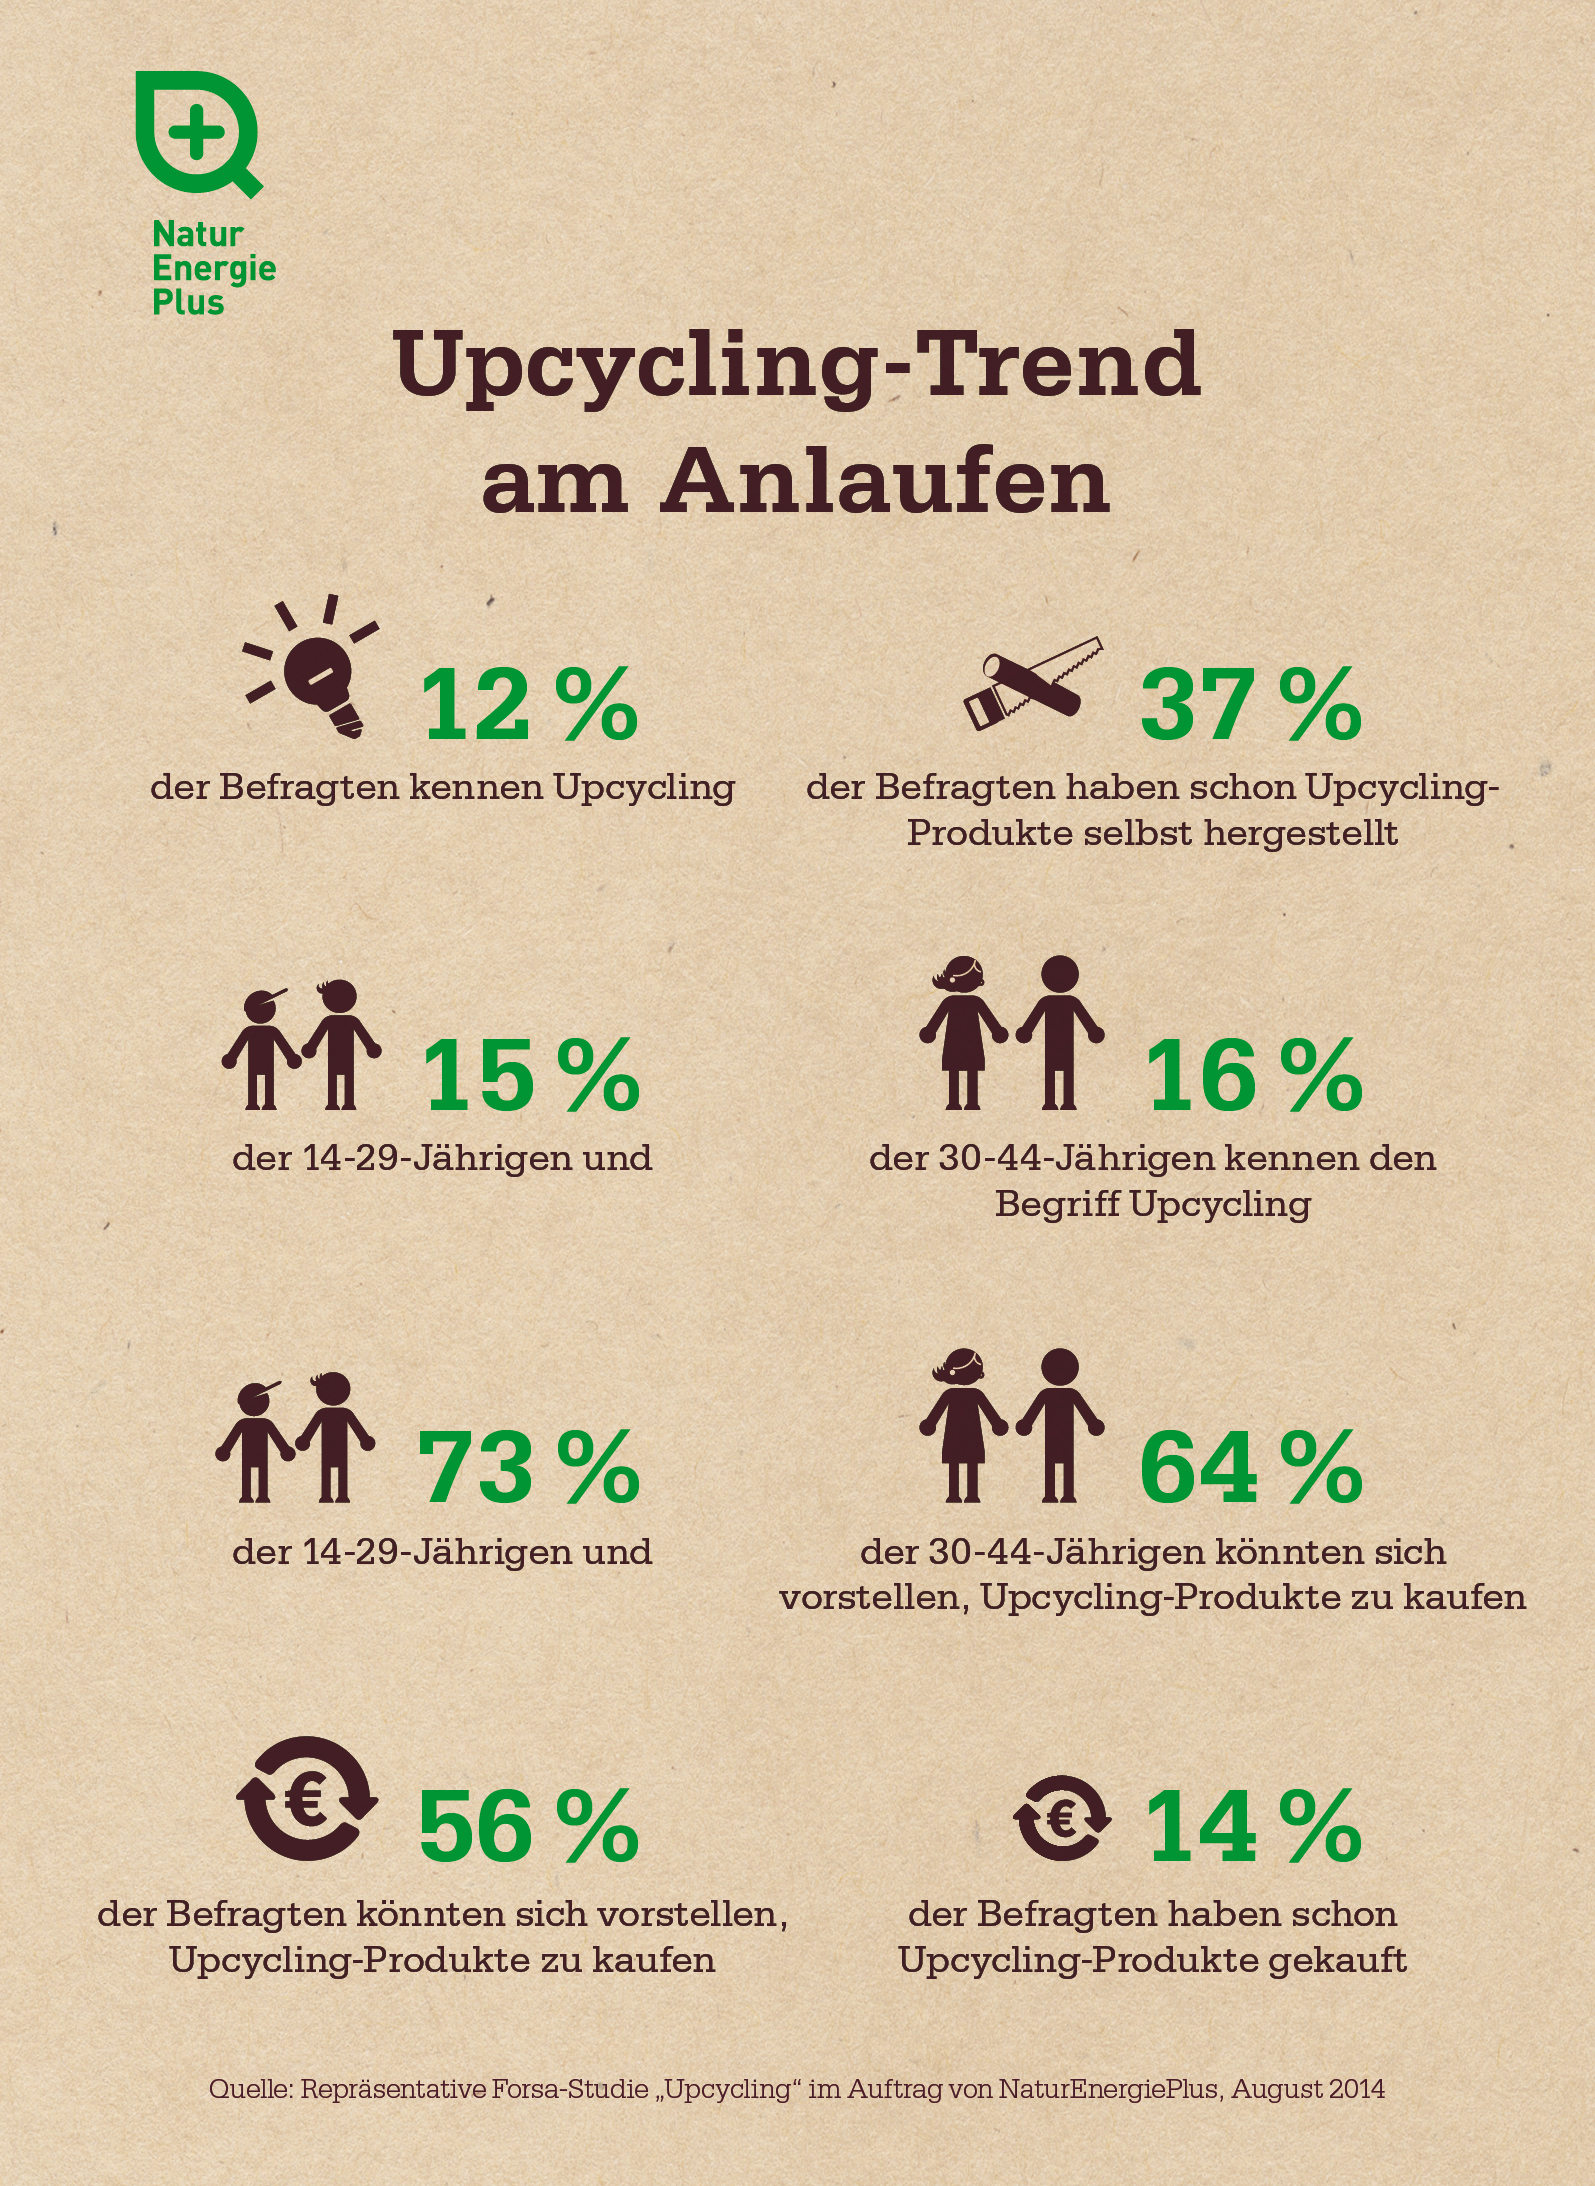 Infografik: Upcycling-Studie von NaturEnergiePlus (Trend am Anlaufen)